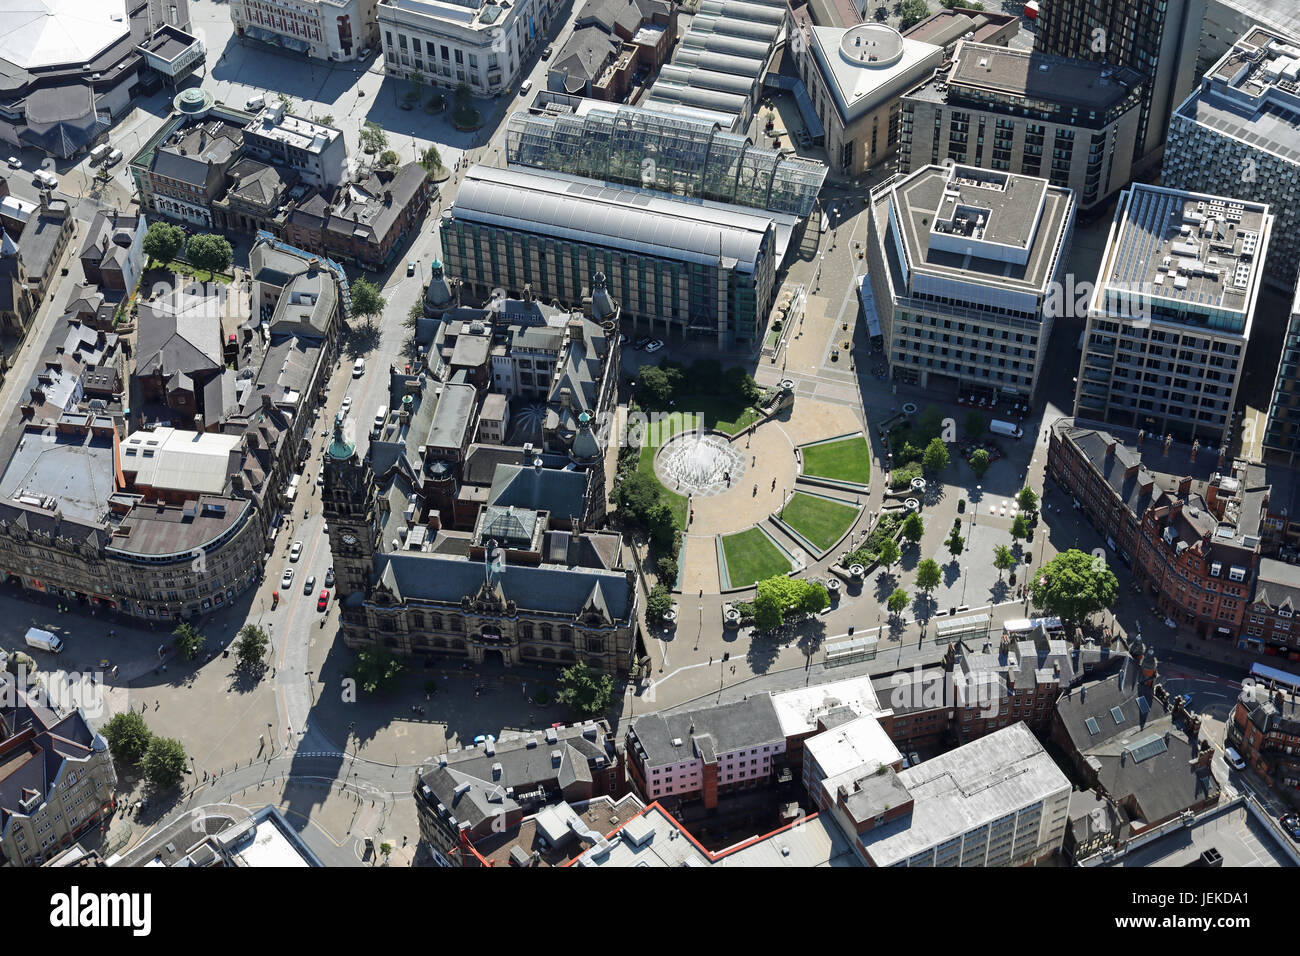 Luftaufnahme von Sheffield Stadtzentrum rund um den Frieden Gärten, inkl. Rathaus & Mercure Hotel Stockfoto